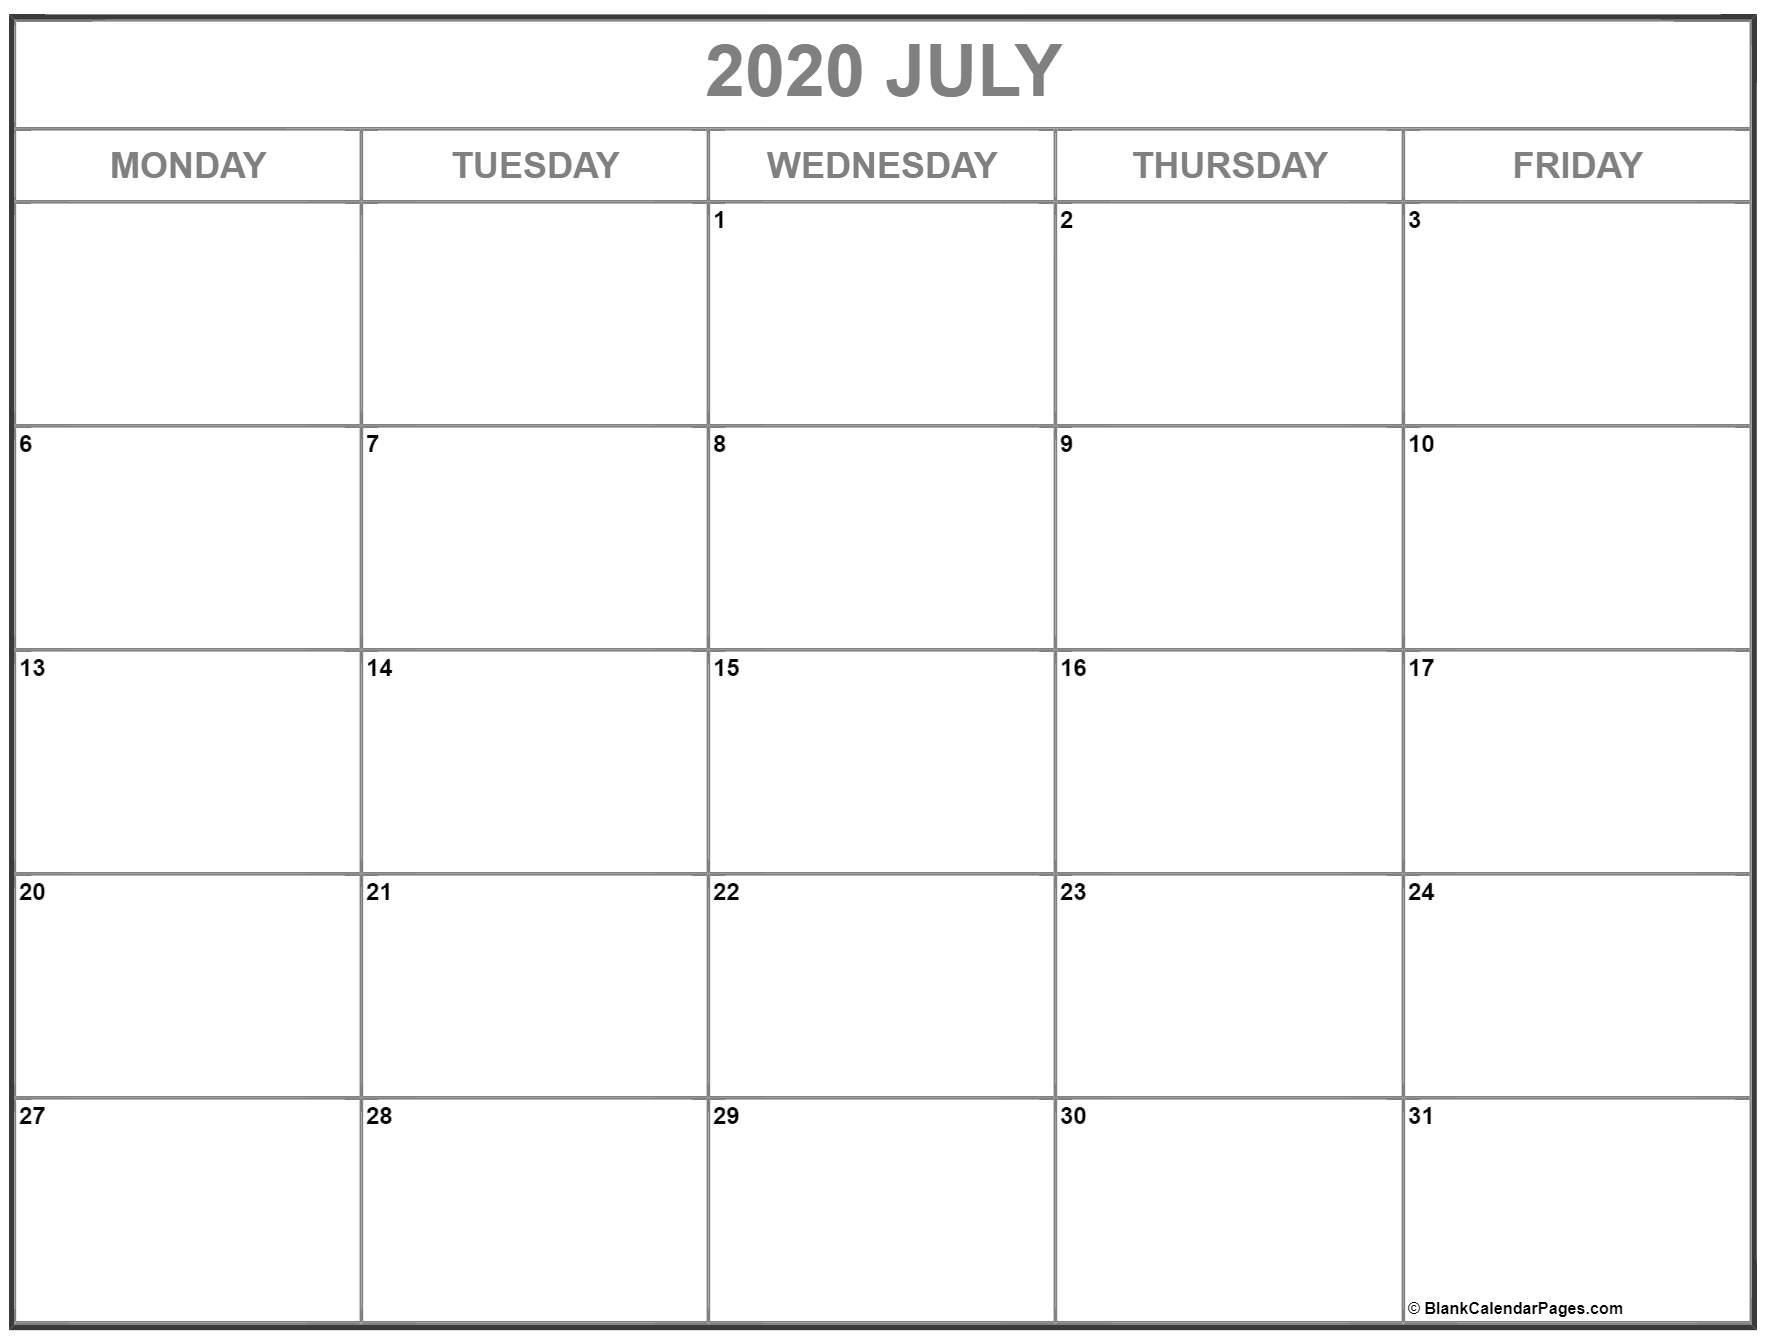 July 2020 Monday Calendar | Monday To Sunday